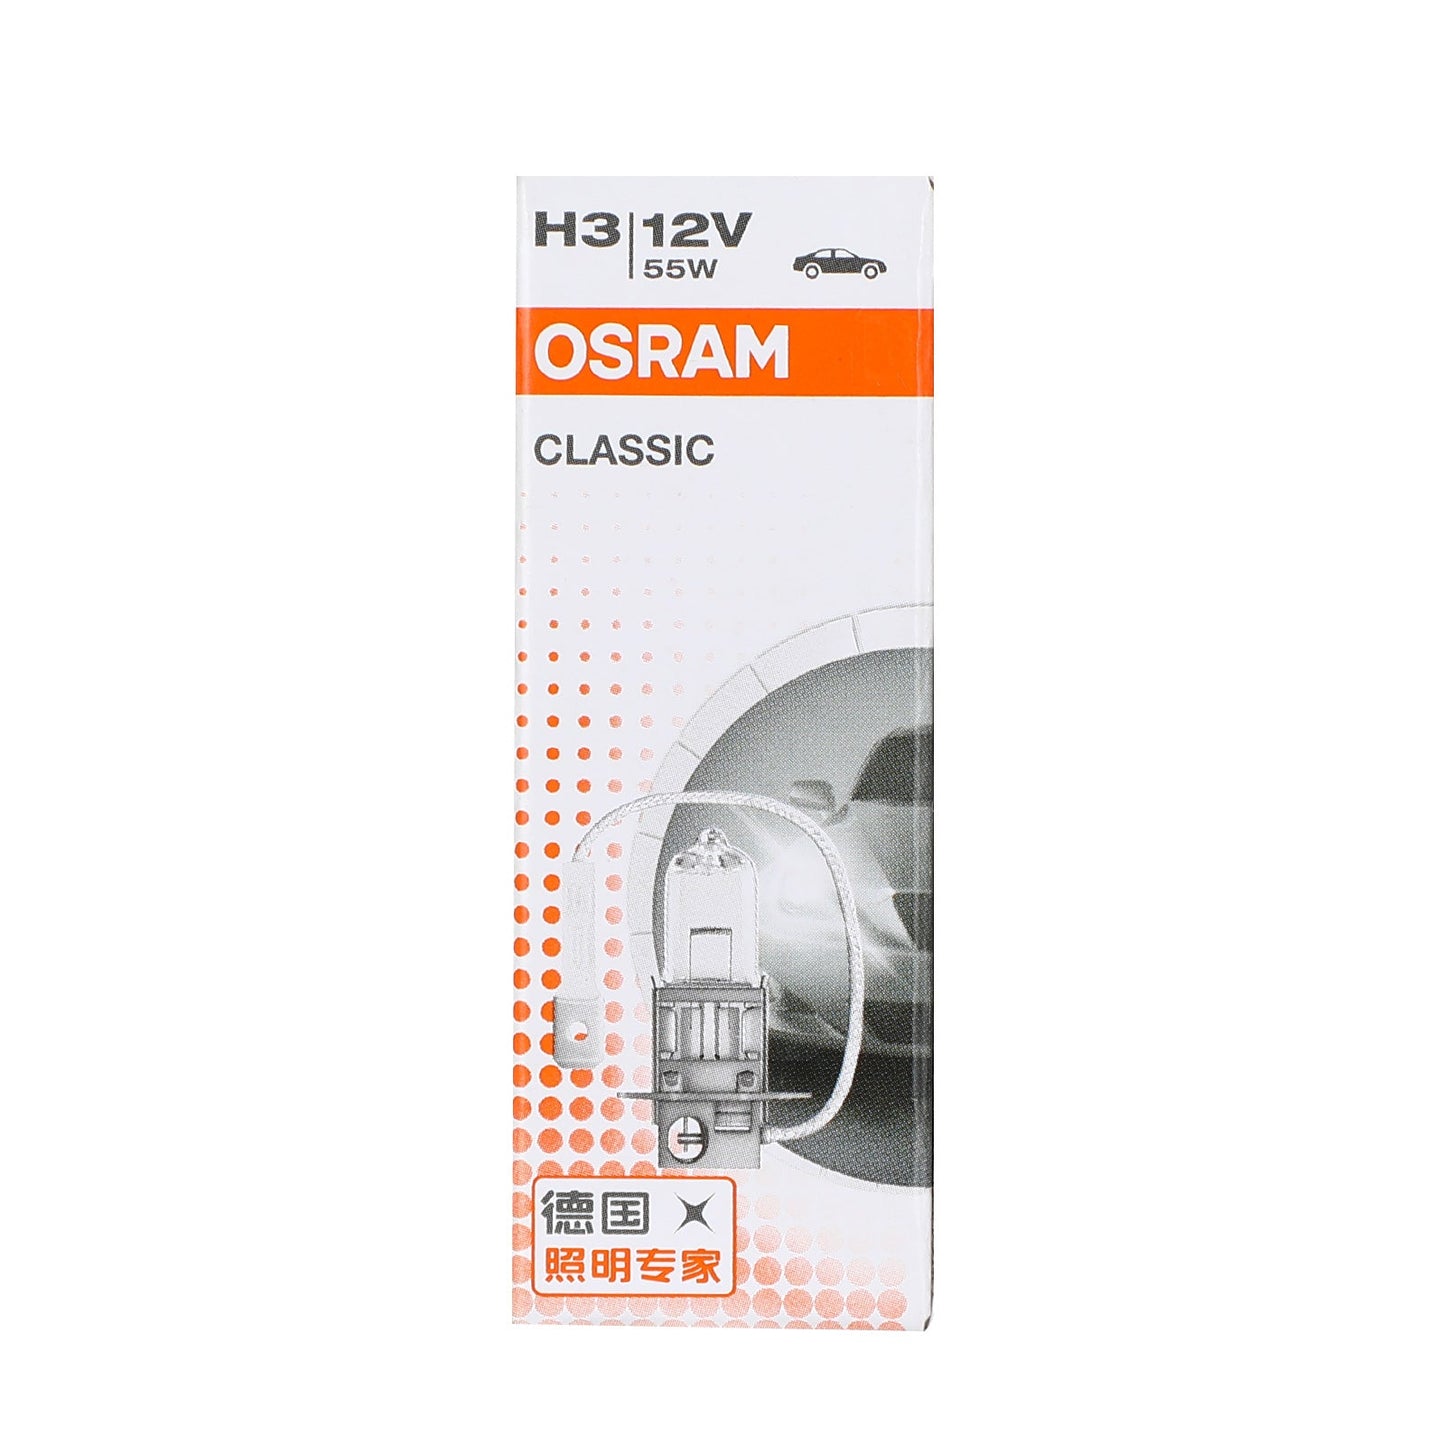 H3 For OSRAM CLASSIC Car Headlight Lamp PK22s 12V55W 64151